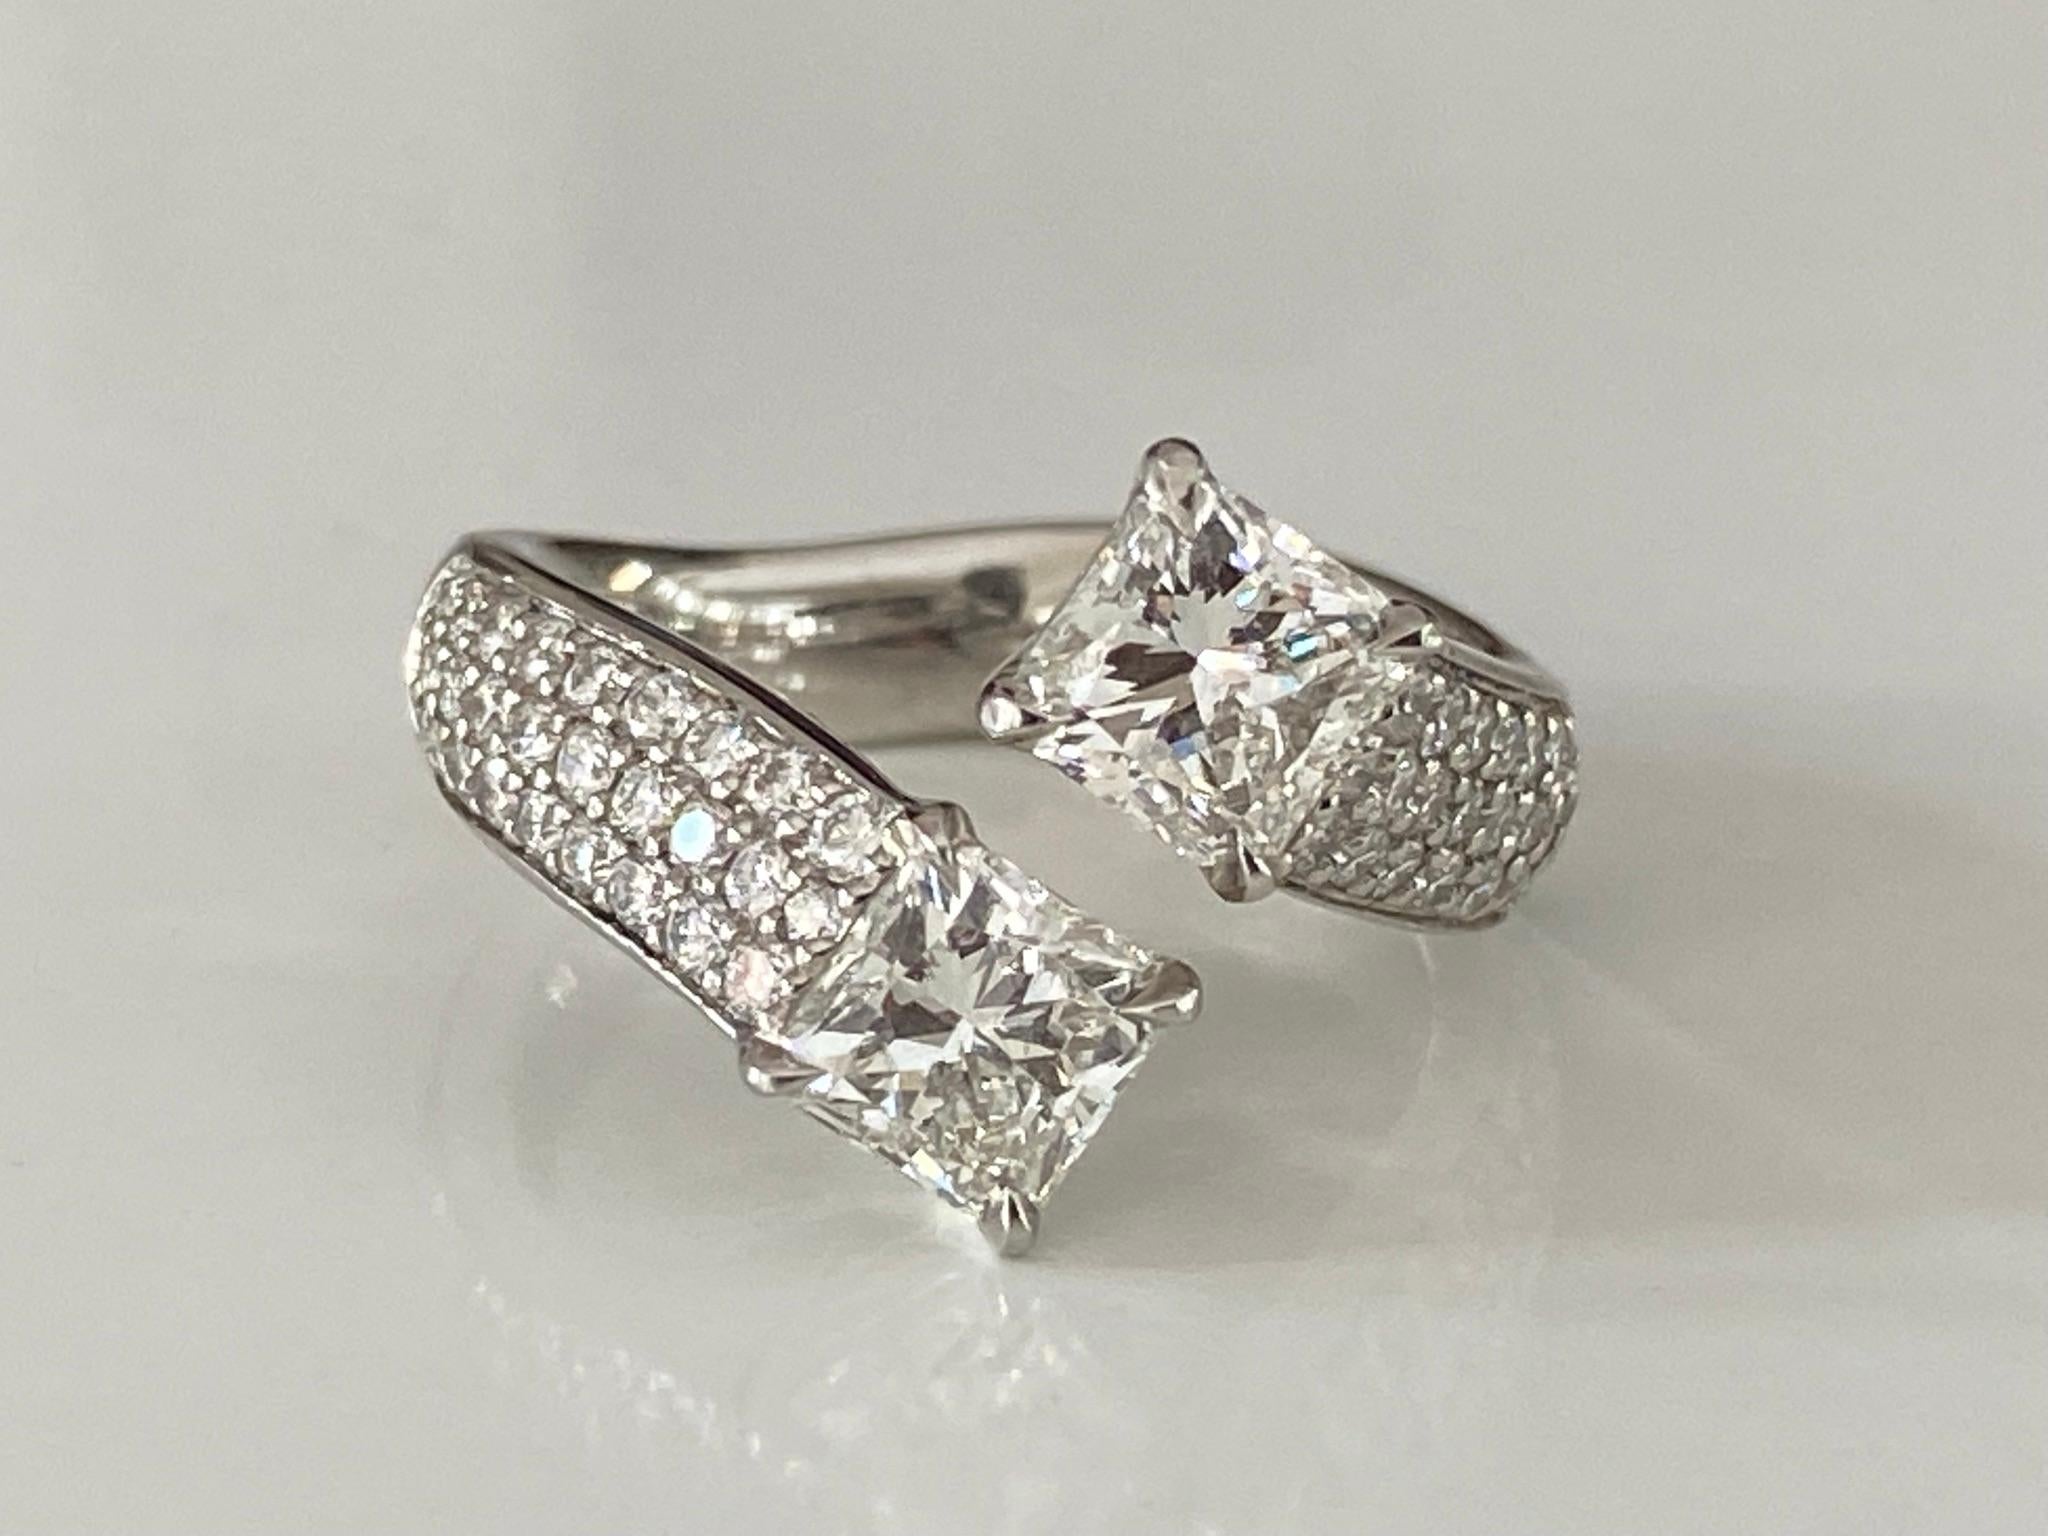 Dieser atemberaubende Bypass-Ring besteht aus zwei natürlichen Diamanten im Brillantschliff mit einem Gesamtgewicht von 2,00 Karat, Farbe H, Reinheit VS, auf einem funkelnden, mit Diamanten besetzten Platinband. Die runden Diamanten haben insgesamt